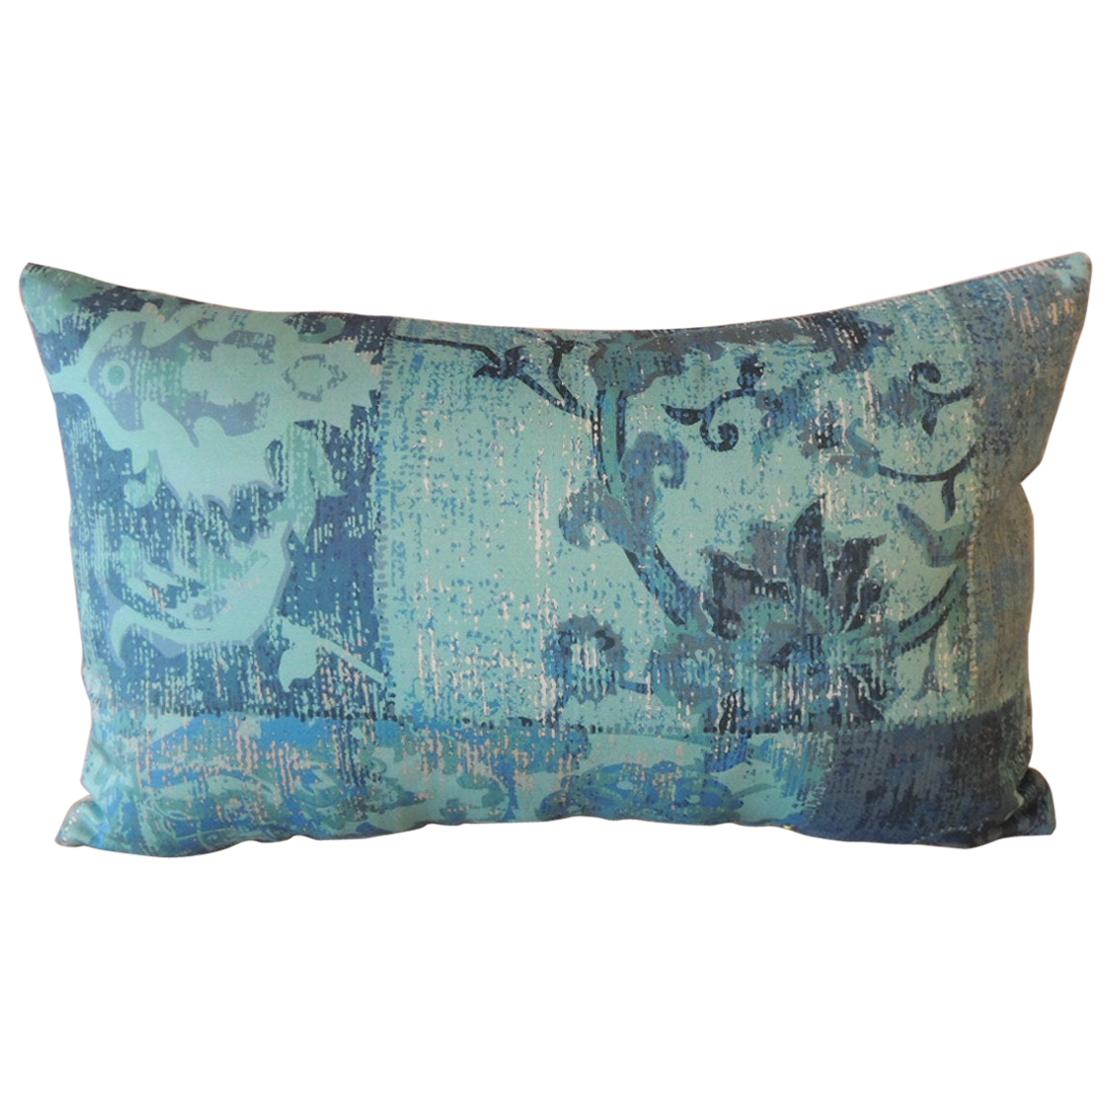 Aqua and Blue Satin Cotton Modern Lumbar Decorative Pillow